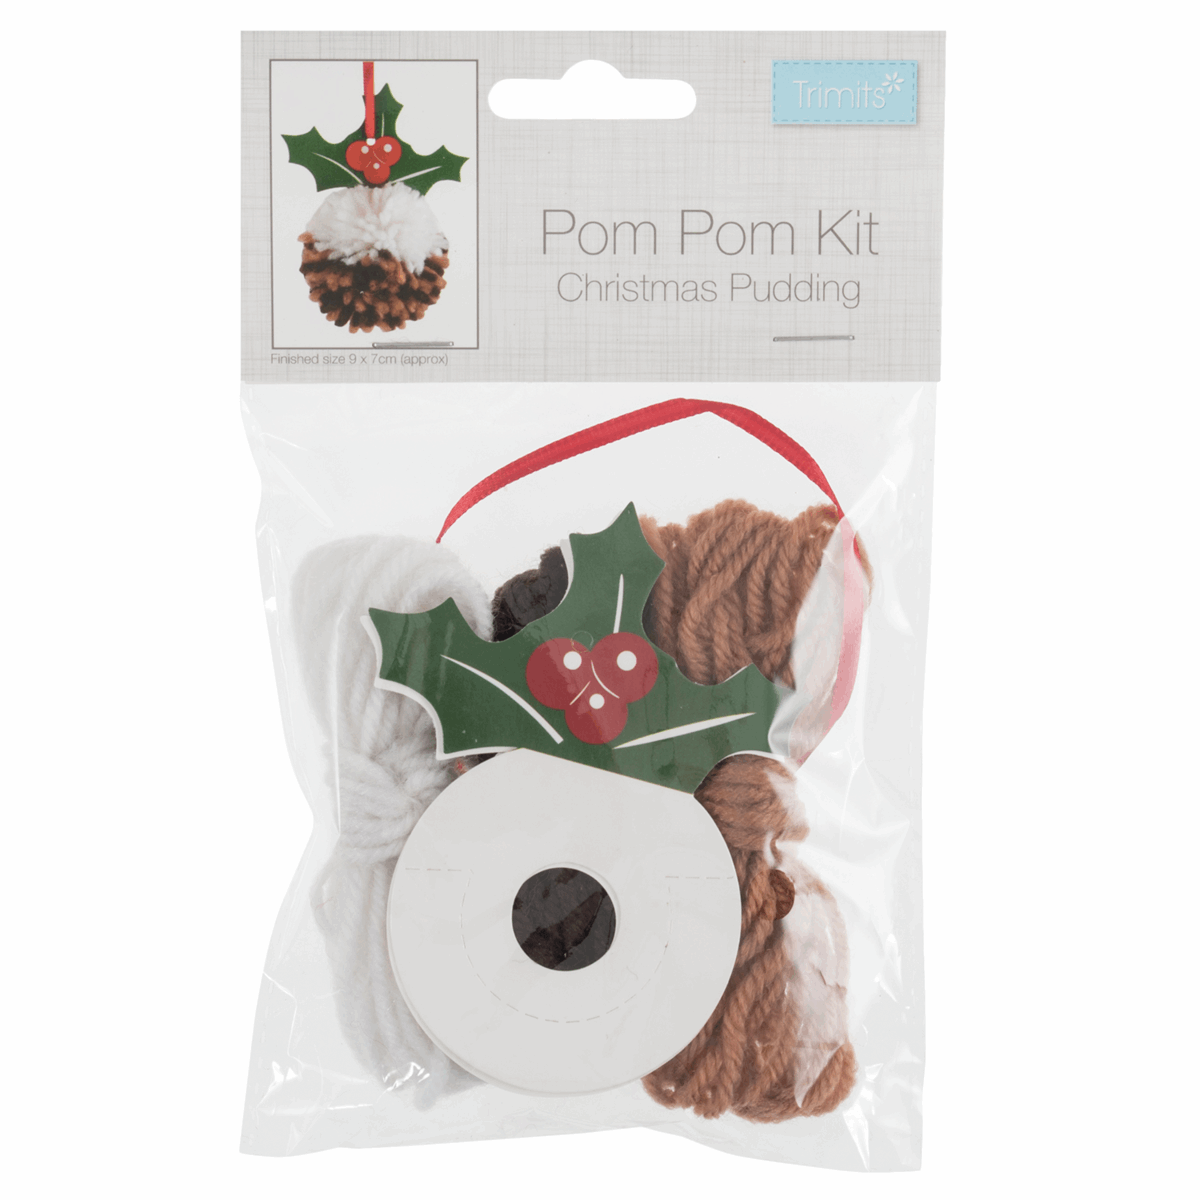 Pom Pom Decoration Kit: Christmas Pudding